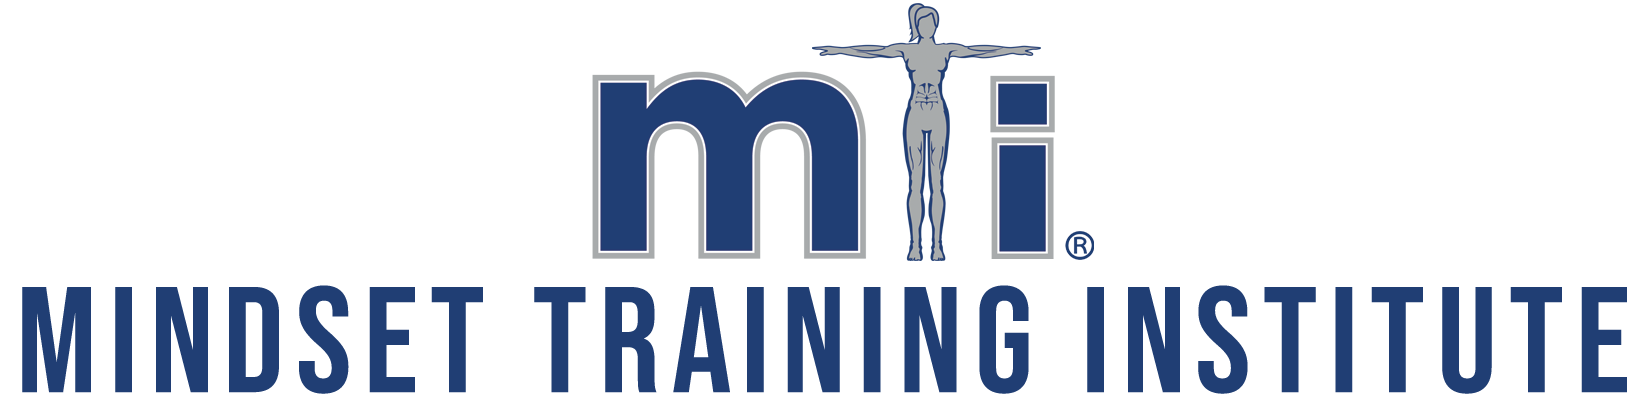 Mindset Training Institute